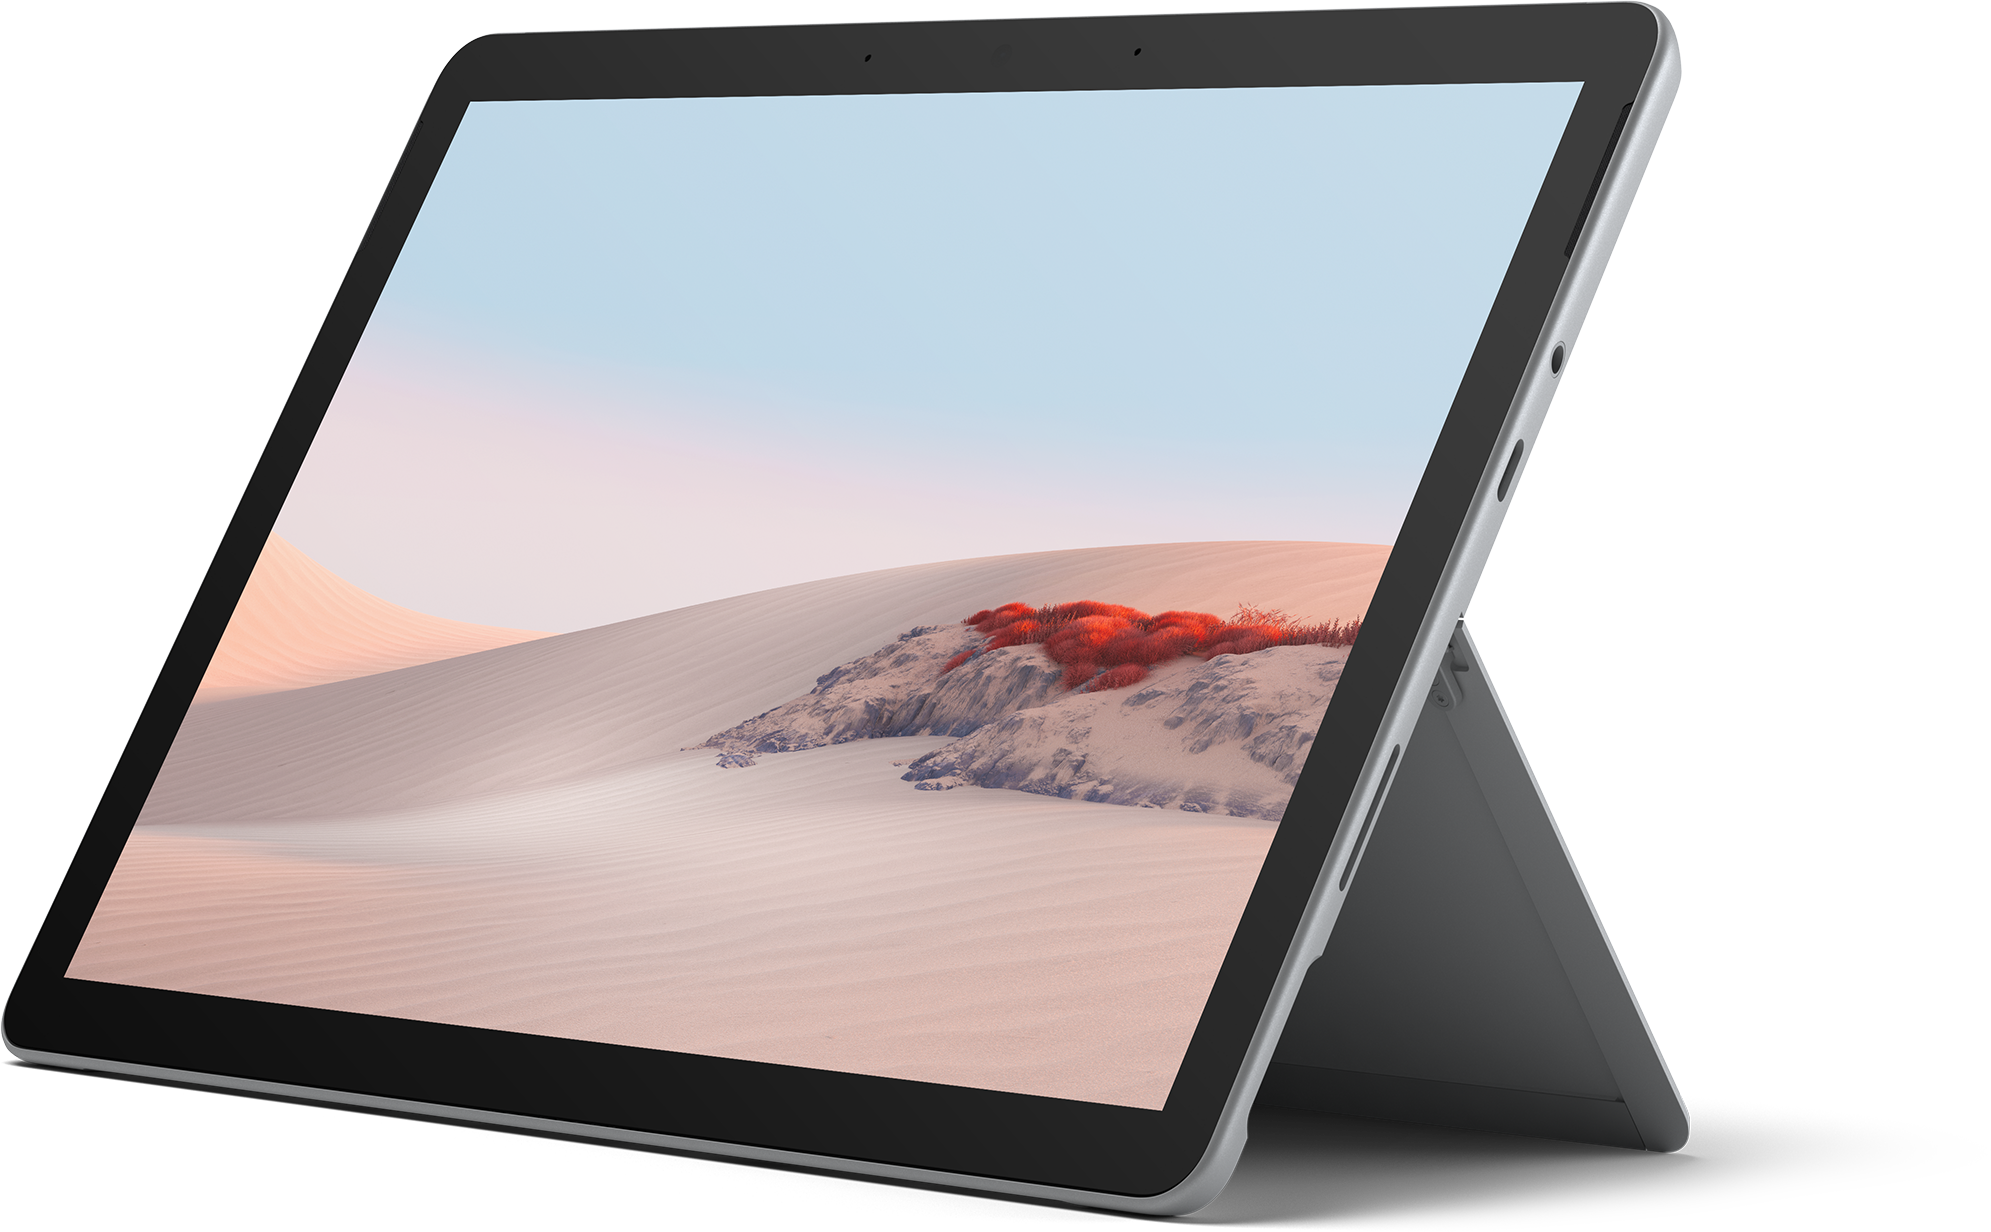 Surface Go 2 - Wi Fi, Intel Pentium 4425Y, 4GB RAM, 64 GB eMMC (Certified Refurbished)